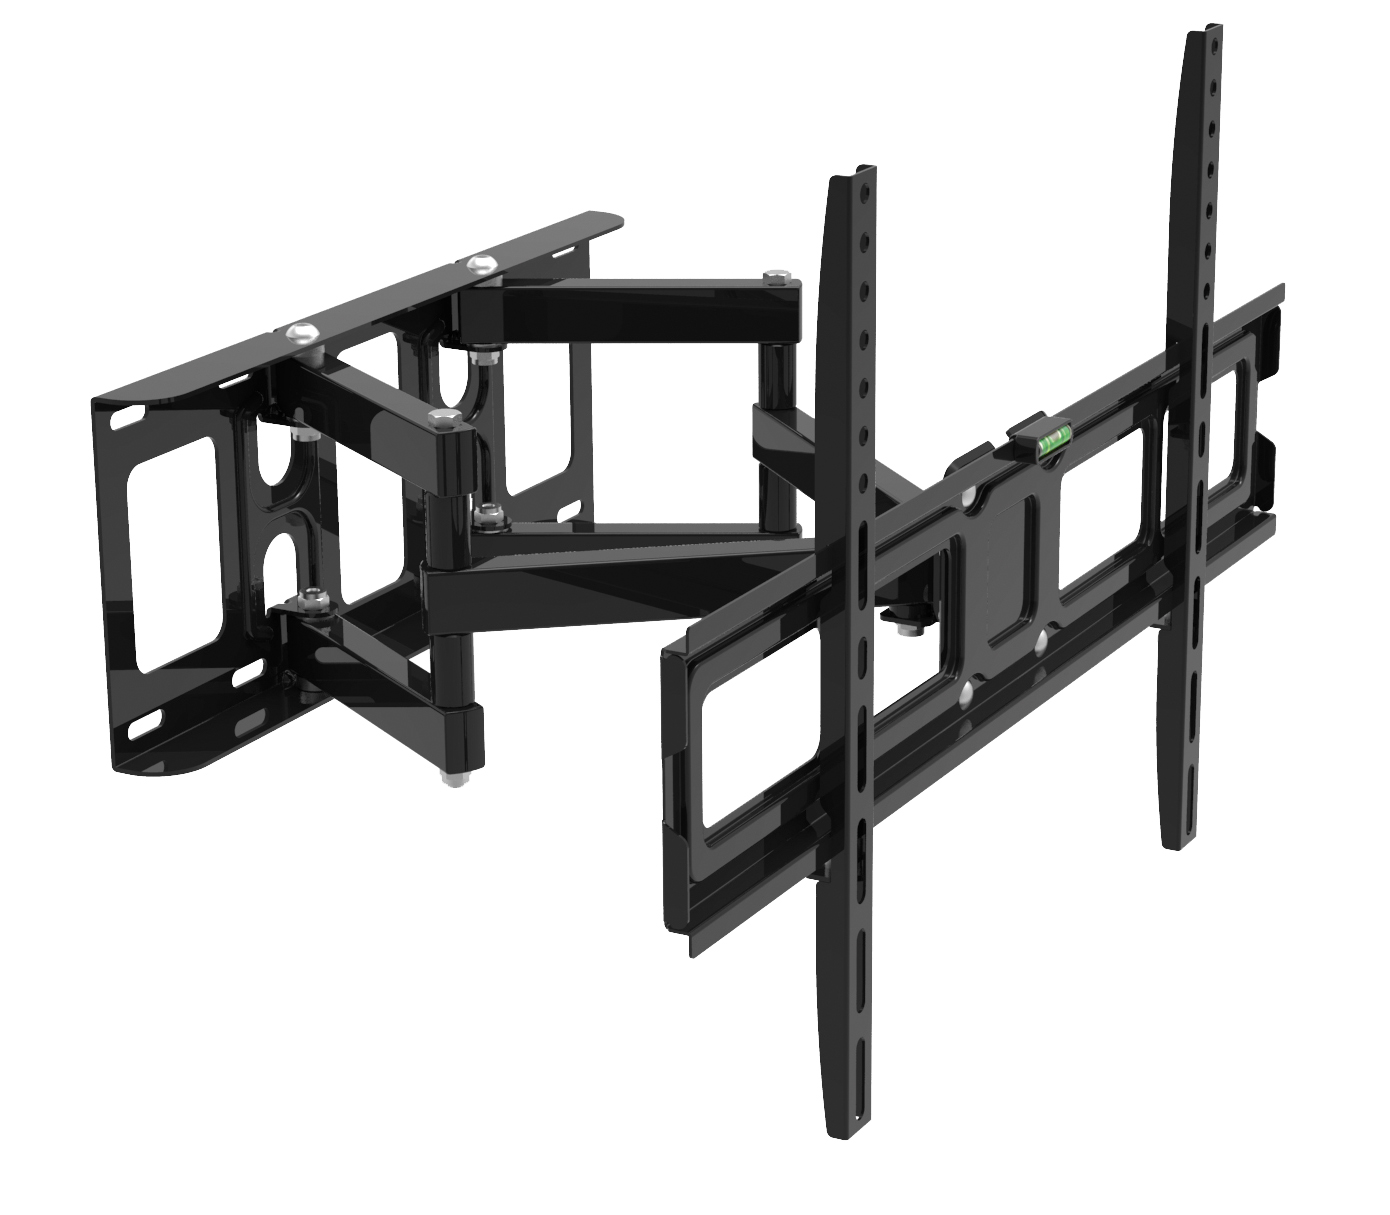 Vollbeweglicher Wandhalter für LCD TV MyWall HF19 für Bildschirme 32''-70''(581-178cm) Belastung bis 45kg schwarz